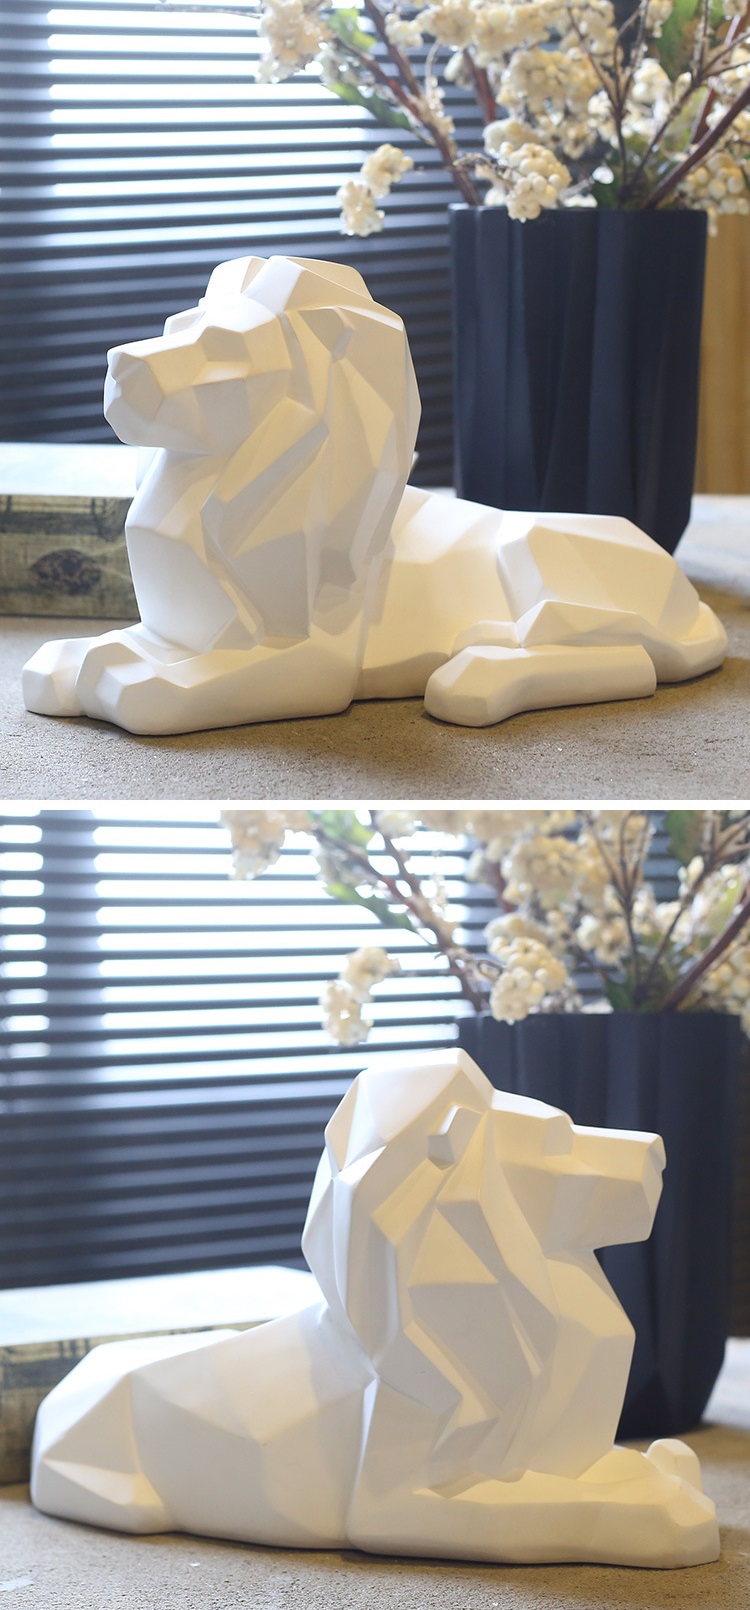 hj3589 几何叠纸狮子摆件_滨州宏景雕塑有限公司